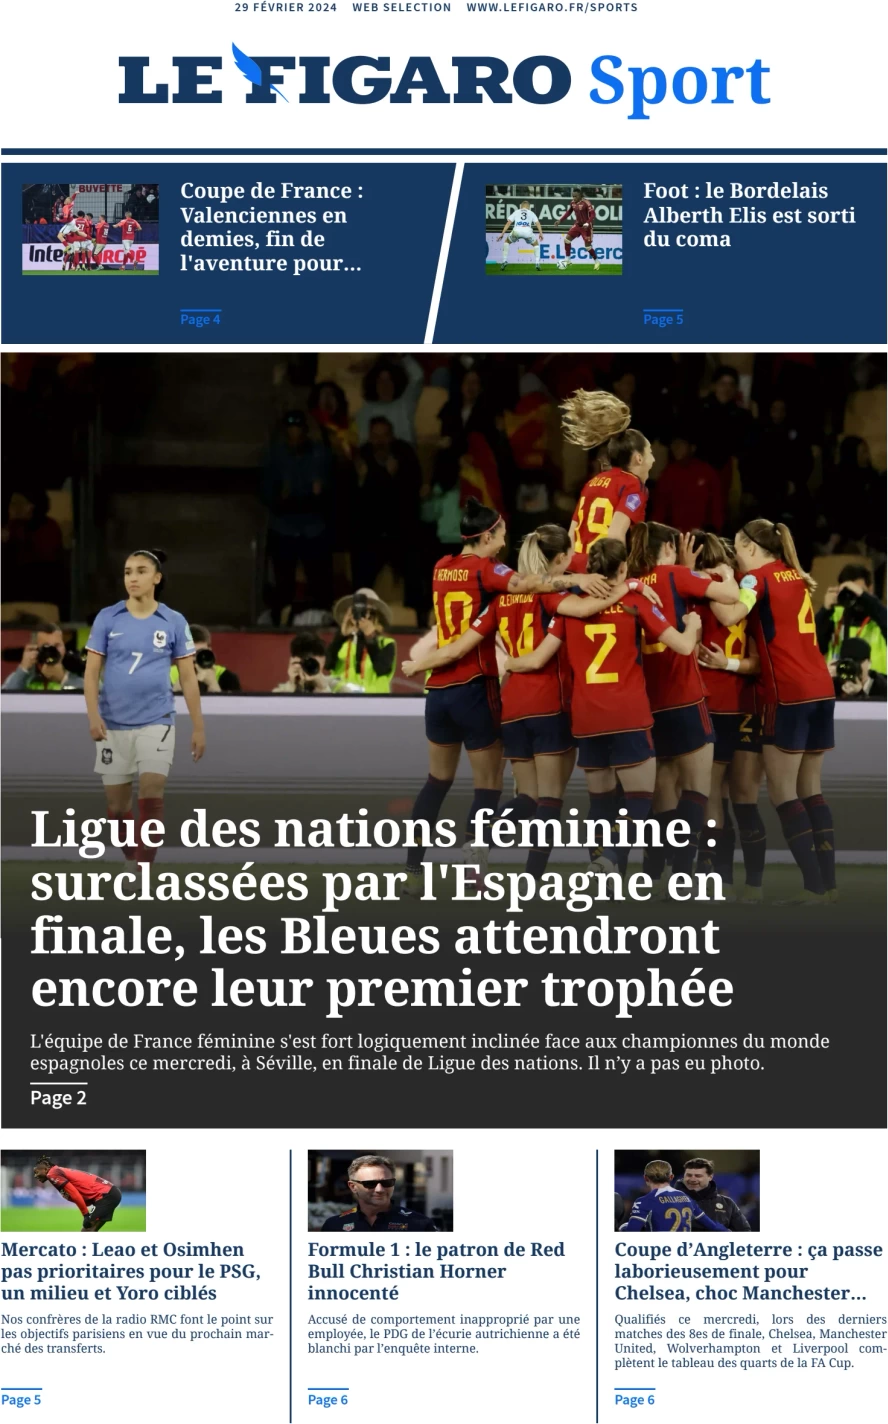 prima pagina - Le Figaro SPORT del 29/02/2024